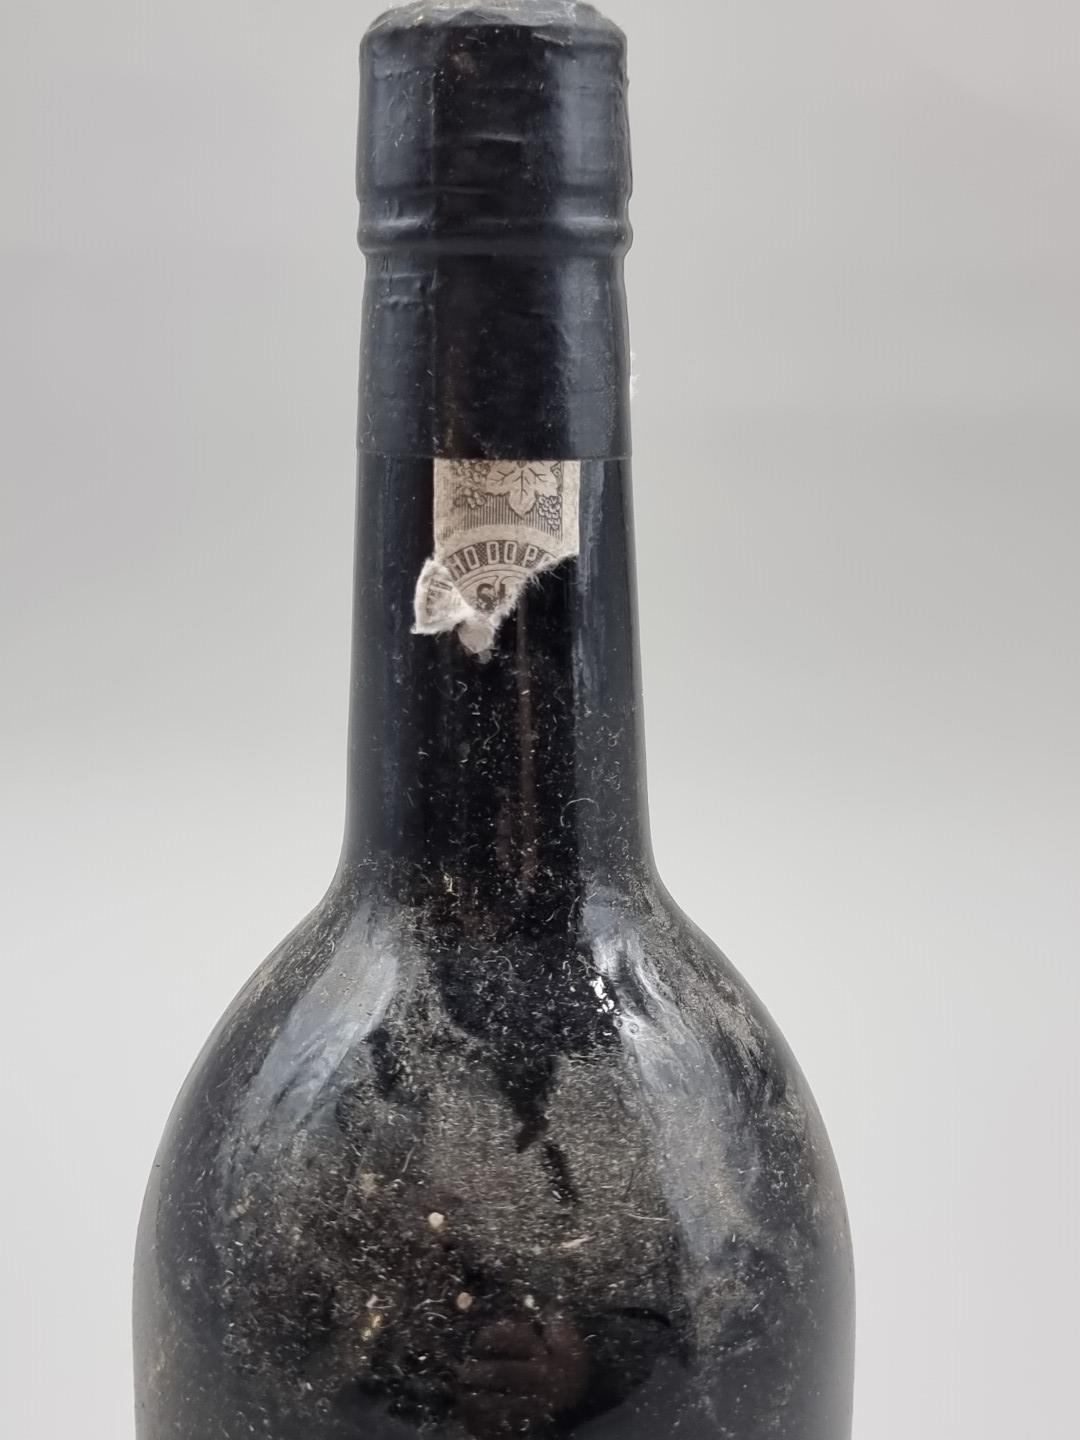 A 75cl bottle of Warre's 1983 Vintage Port, bottled in 1985. - Image 2 of 3